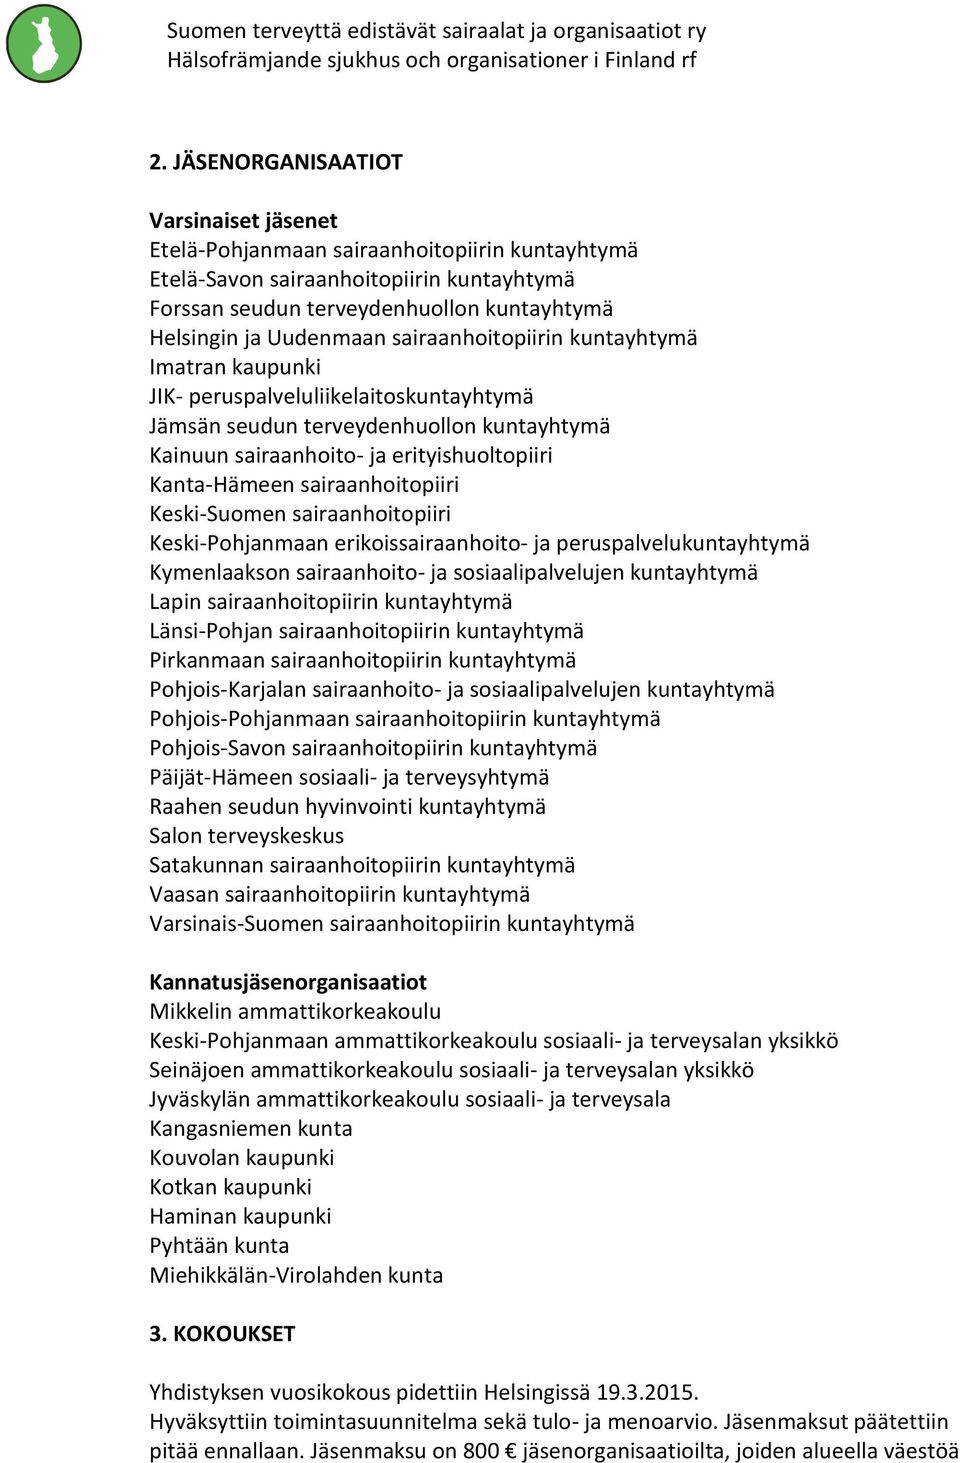 sairaanhoitopiiri Keski-Suomen sairaanhoitopiiri Keski-Pohjanmaan erikoissairaanhoito- ja peruspalvelukuntayhtymä Kymenlaakson sairaanhoito- ja sosiaalipalvelujen kuntayhtymä Lapin sairaanhoitopiirin